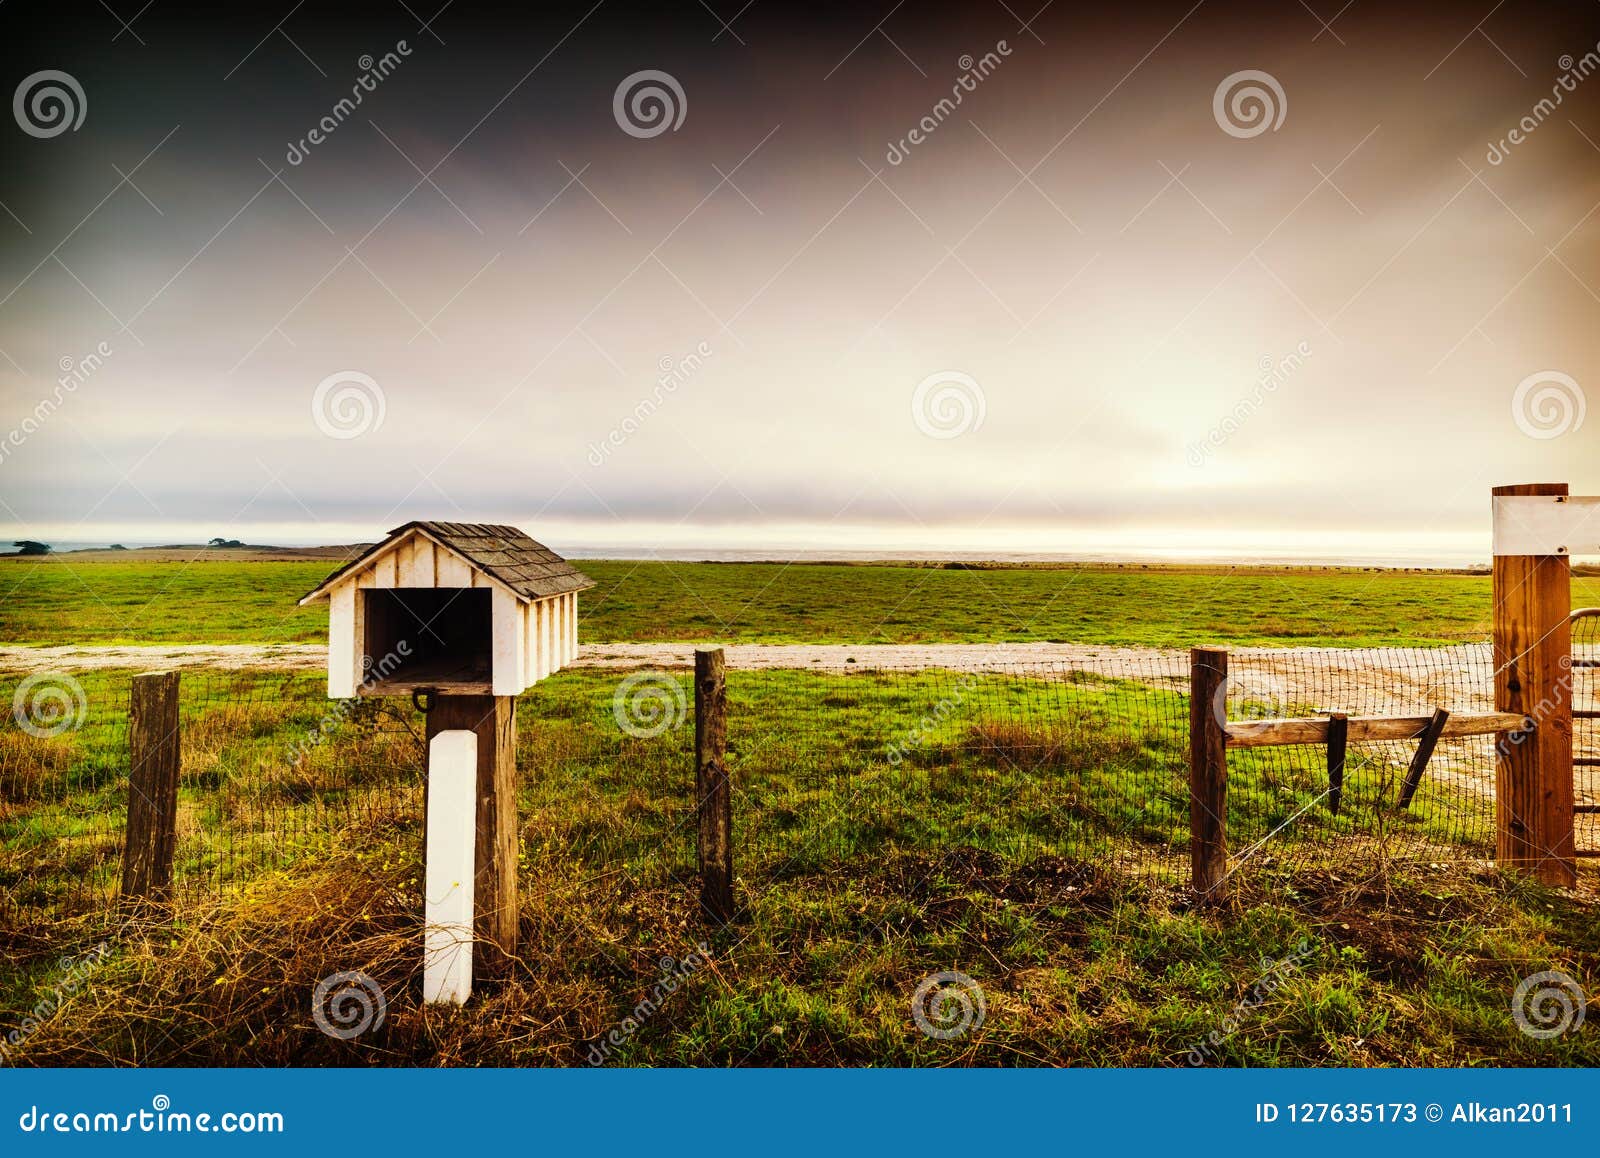 Actief Voorwaarde waardigheid Brievenbus in Een Boerderij in Centraal Californië Stock Afbeelding - Image  of openlucht, landelijk: 127635173